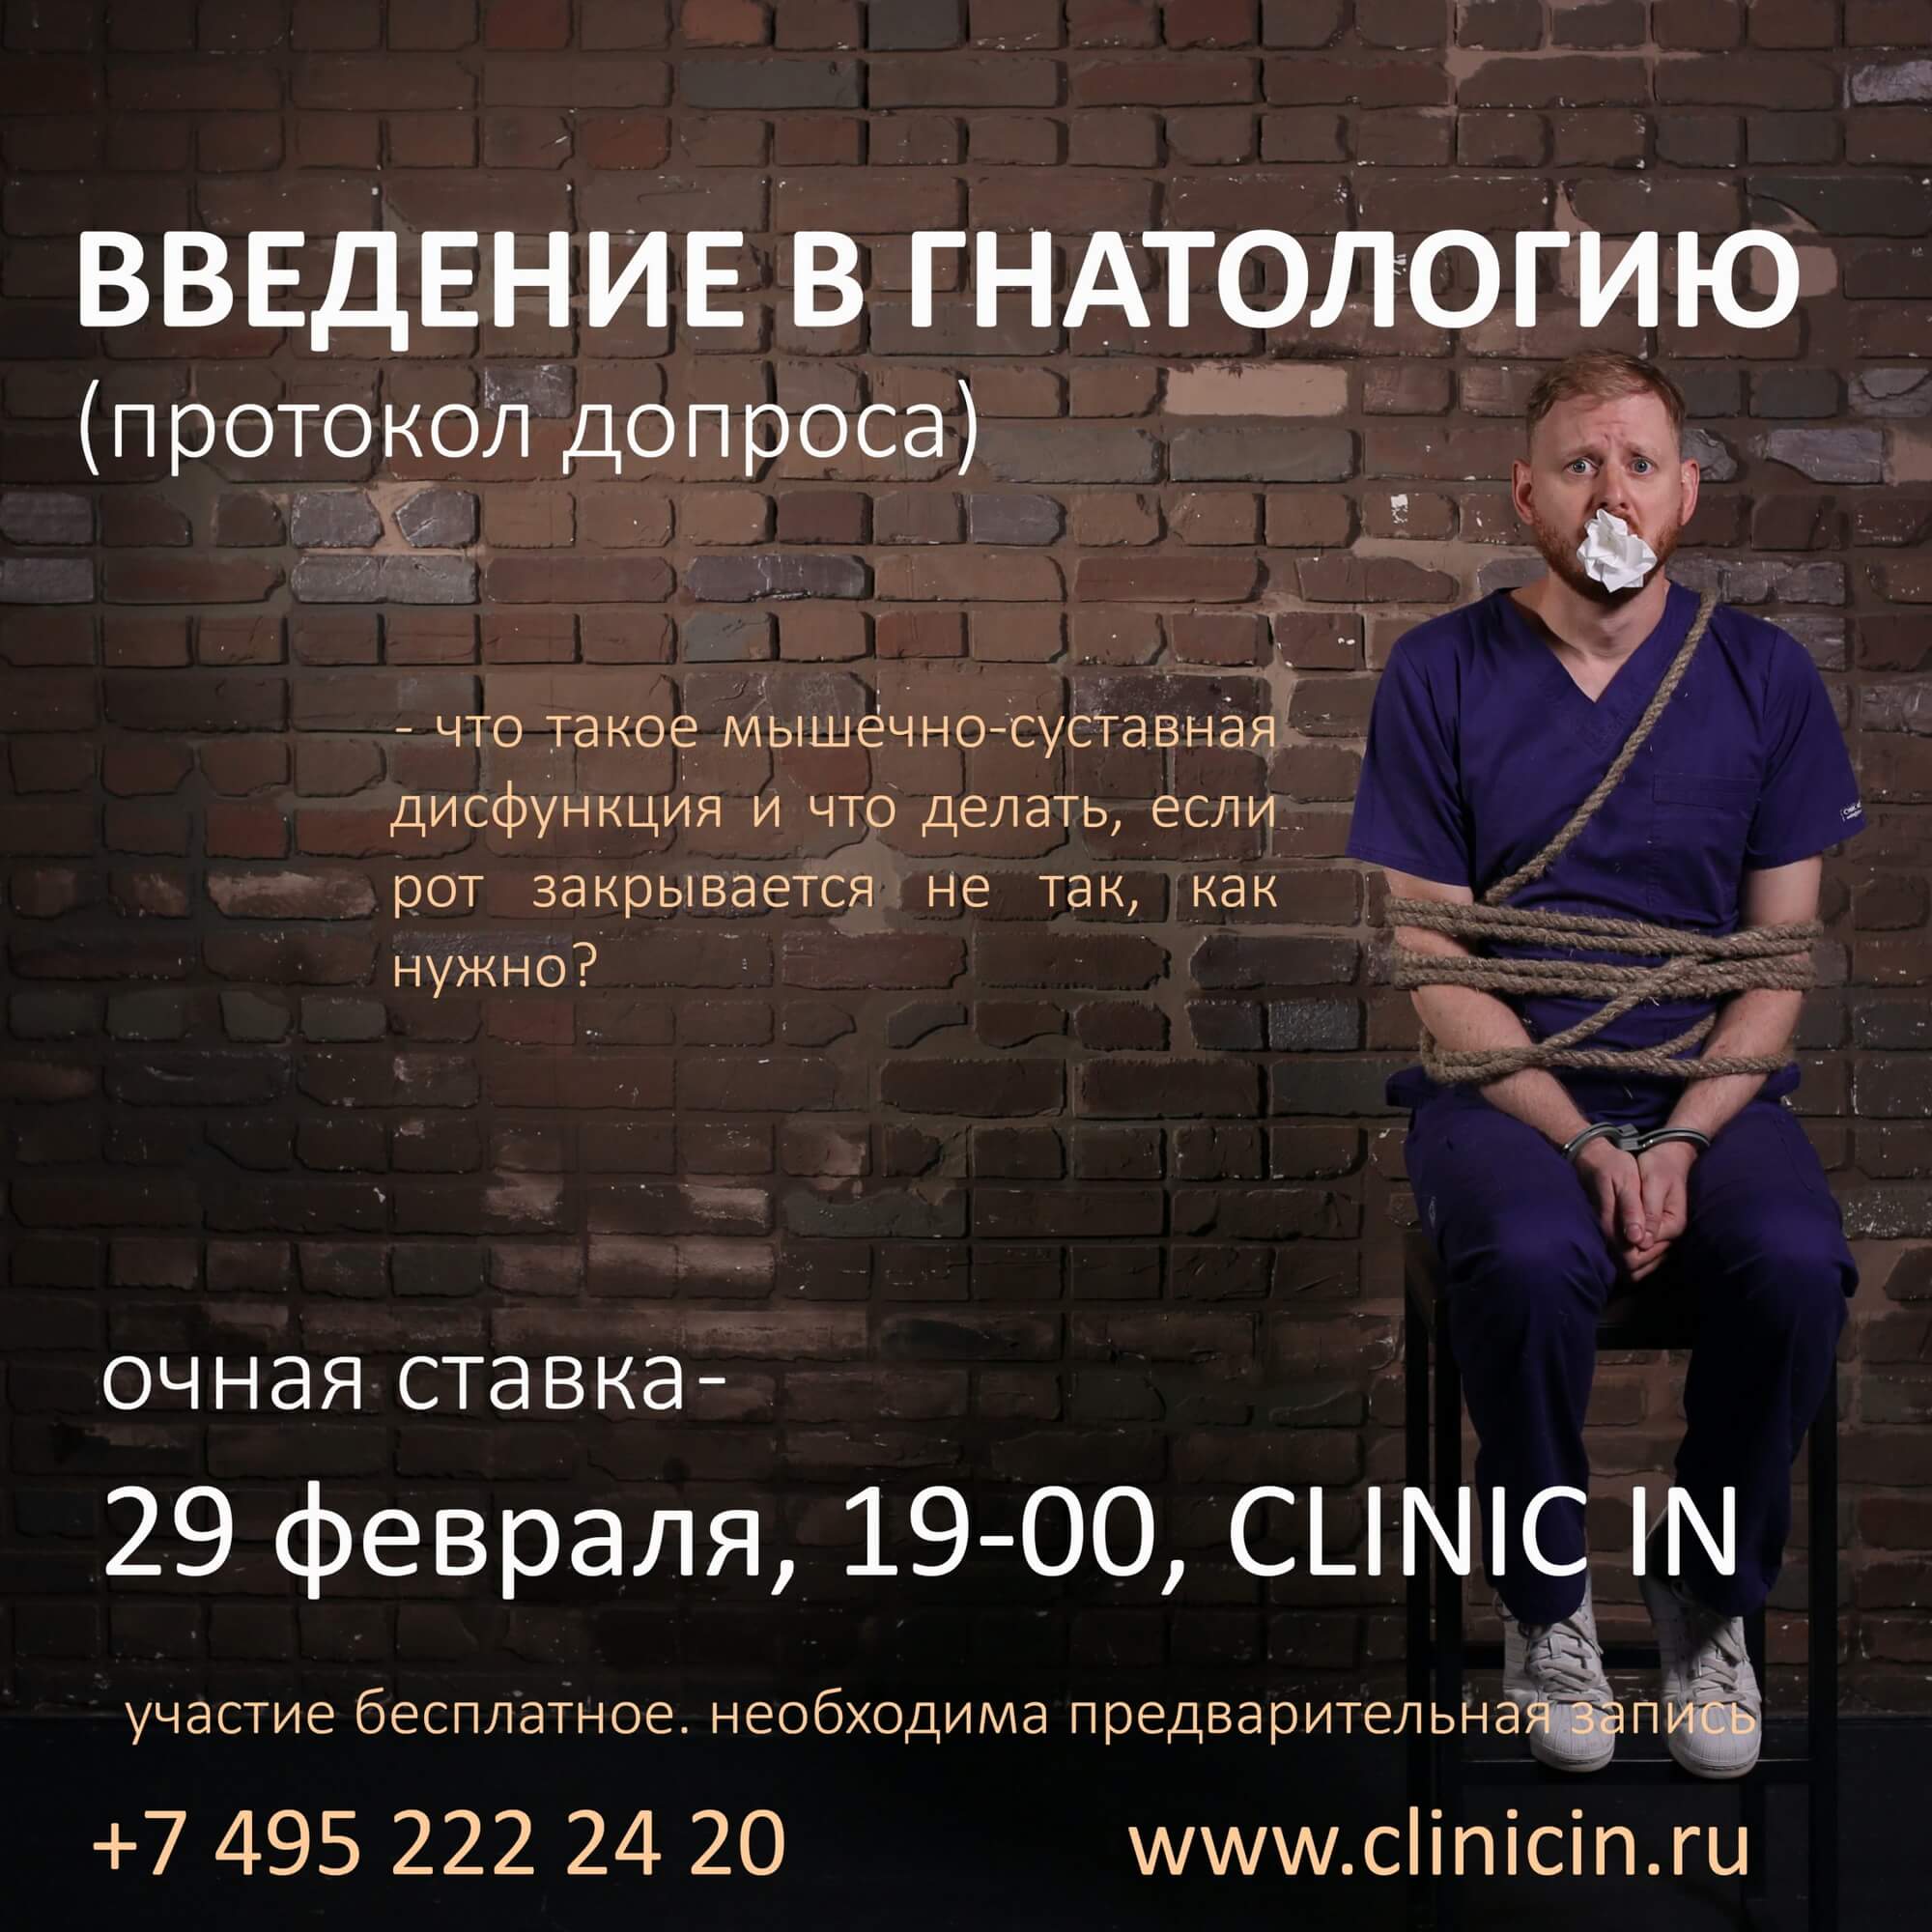 29 февраля, 19-00, CLINIC IN — «Введение в гнатологию». Семинар Ивана Алгазина для всех желающих.